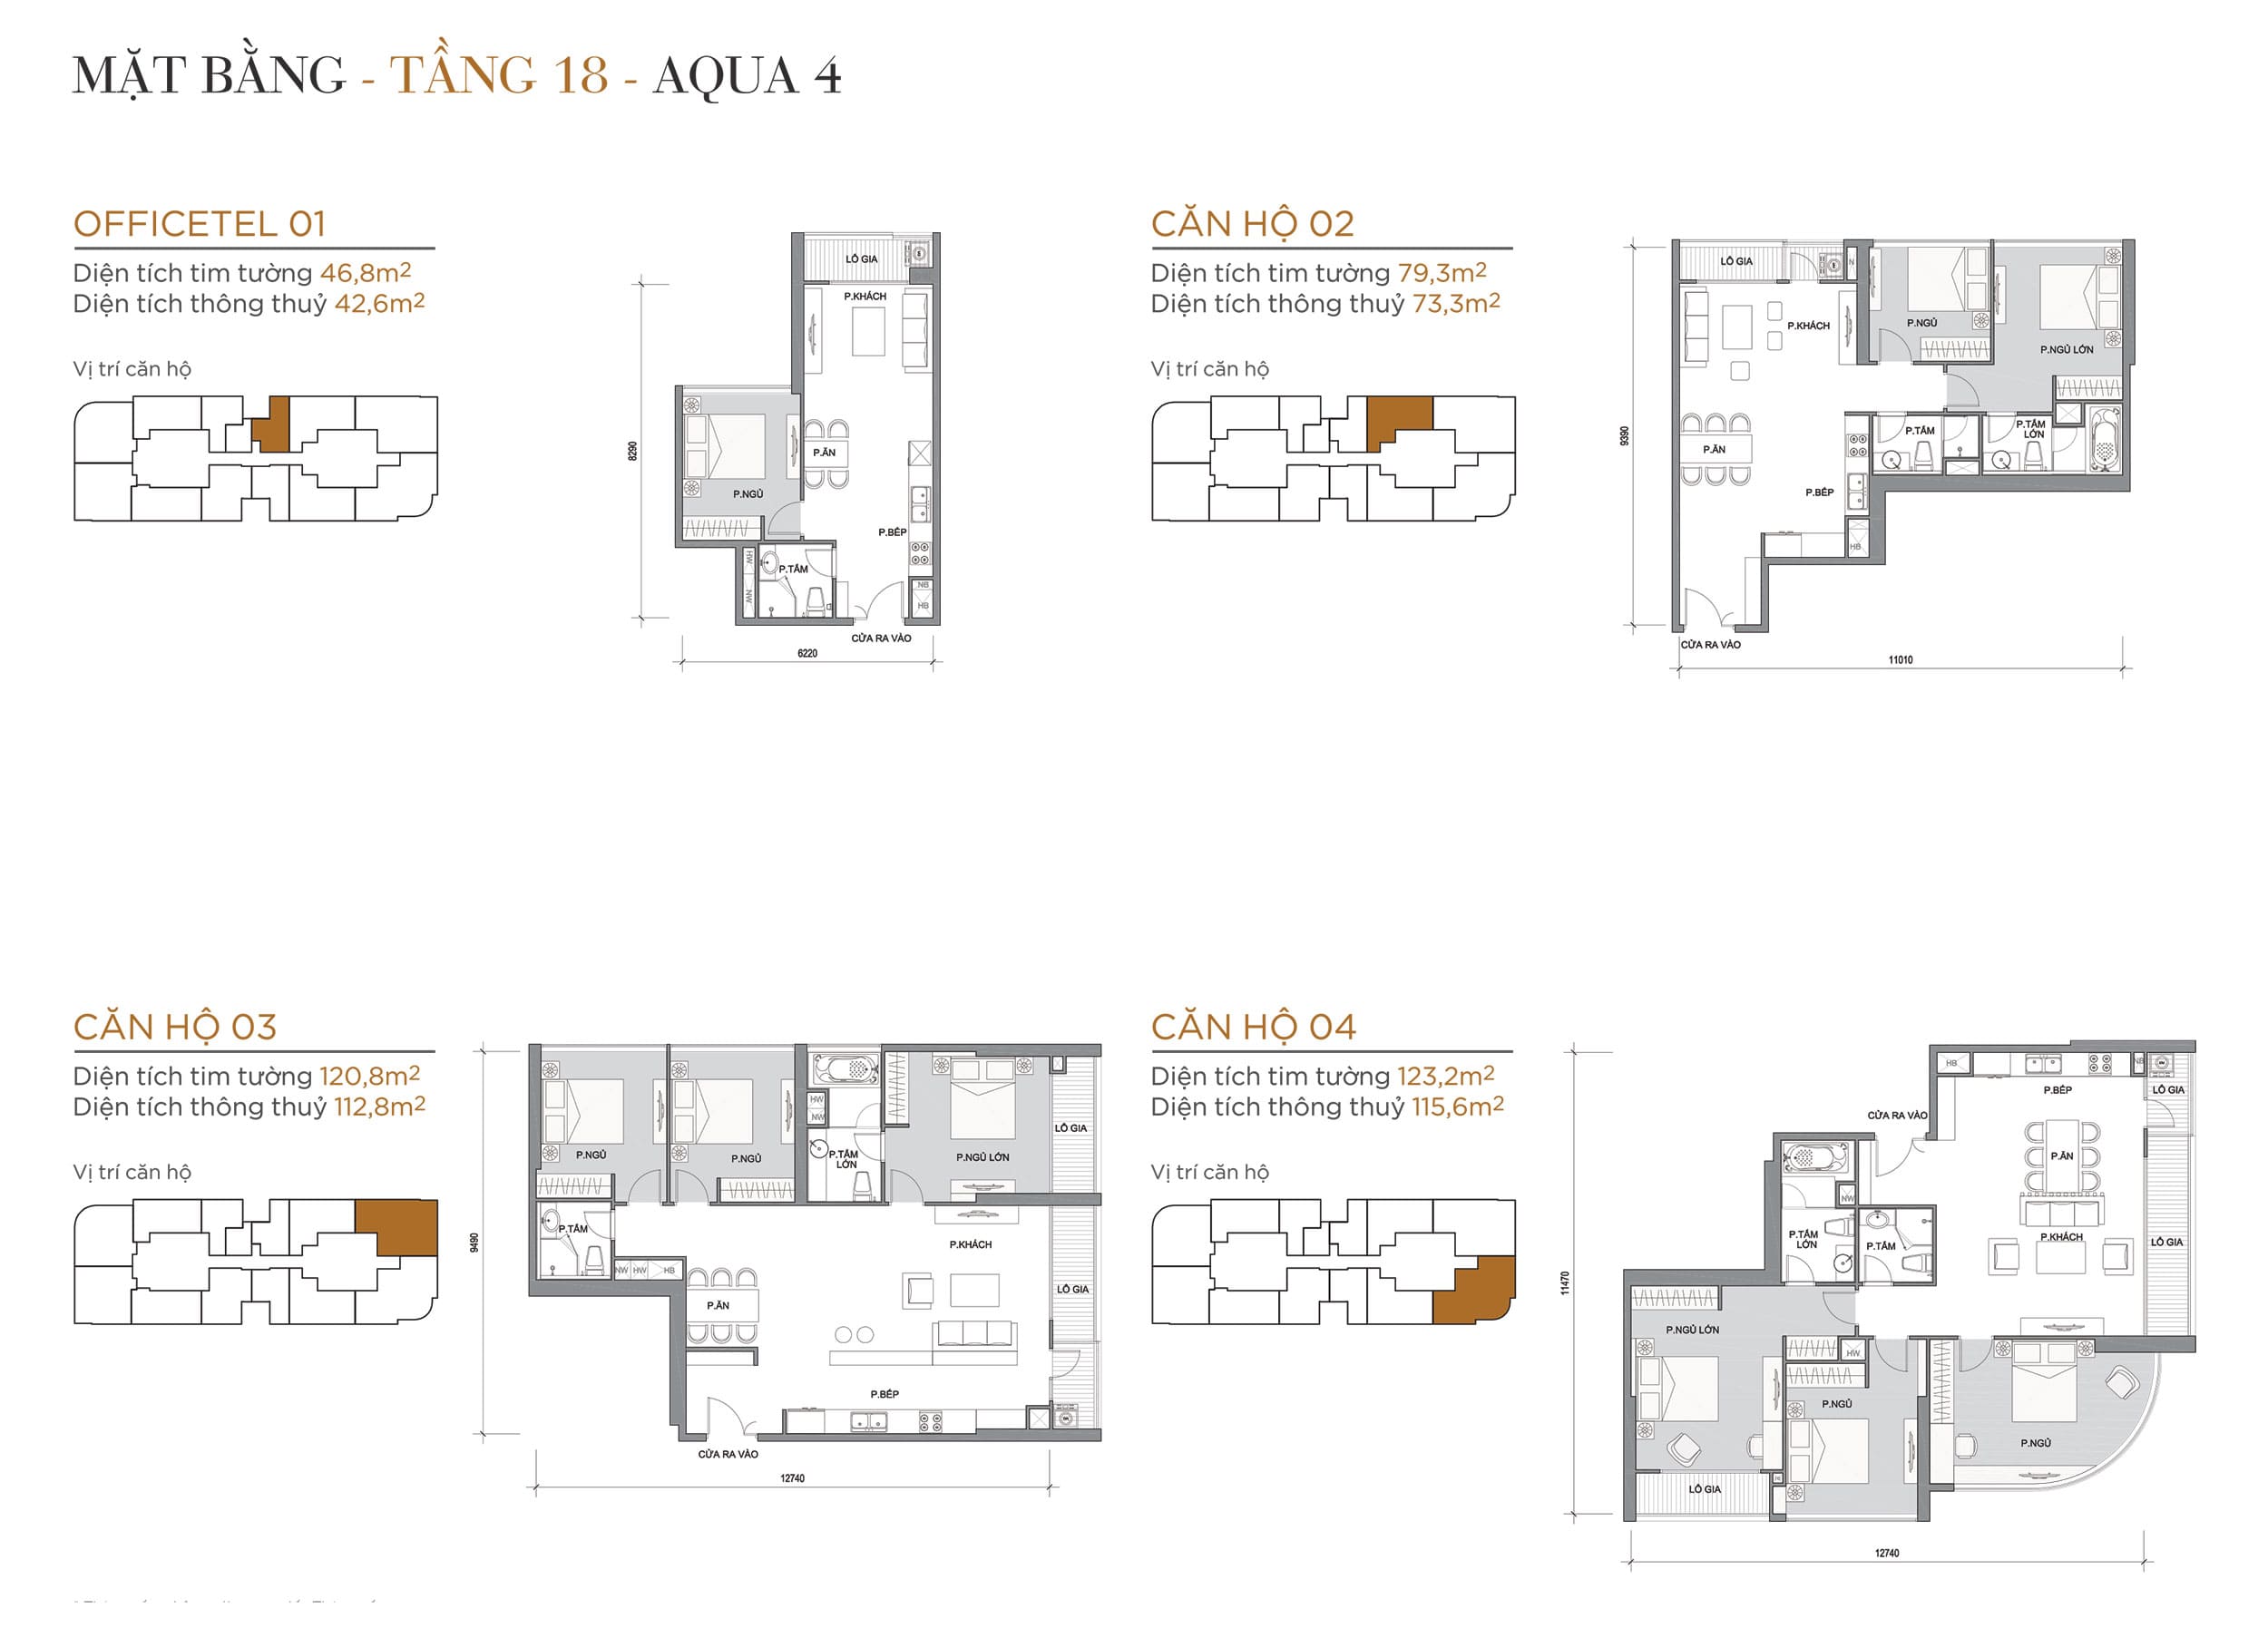 Layout thiết kế điển hình Tầng 18 Tòa Aqua 4 loại Officetel 01, Căn hộ 02, Căn hộ 03, Căn hộ 04.